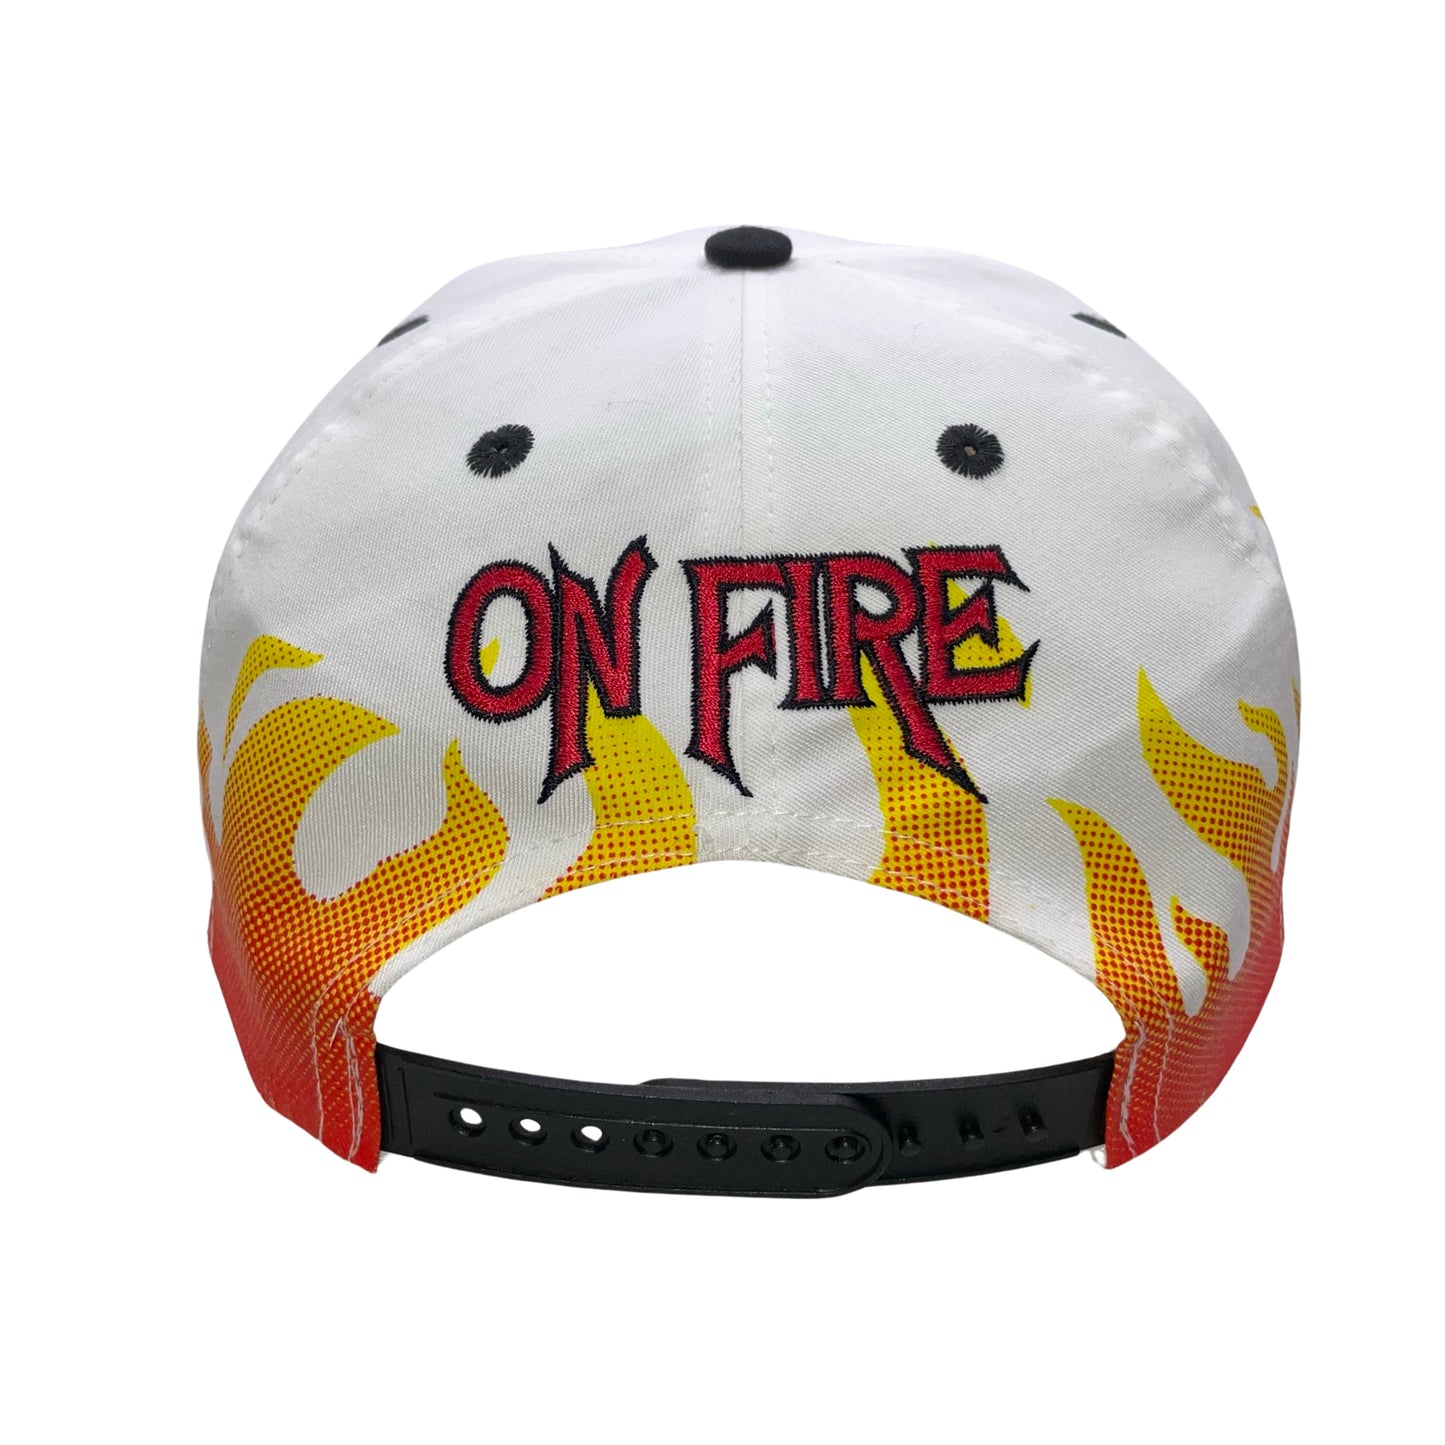 Vintage Jacksonville Jaguars banned logo RARE "On Fire" hat